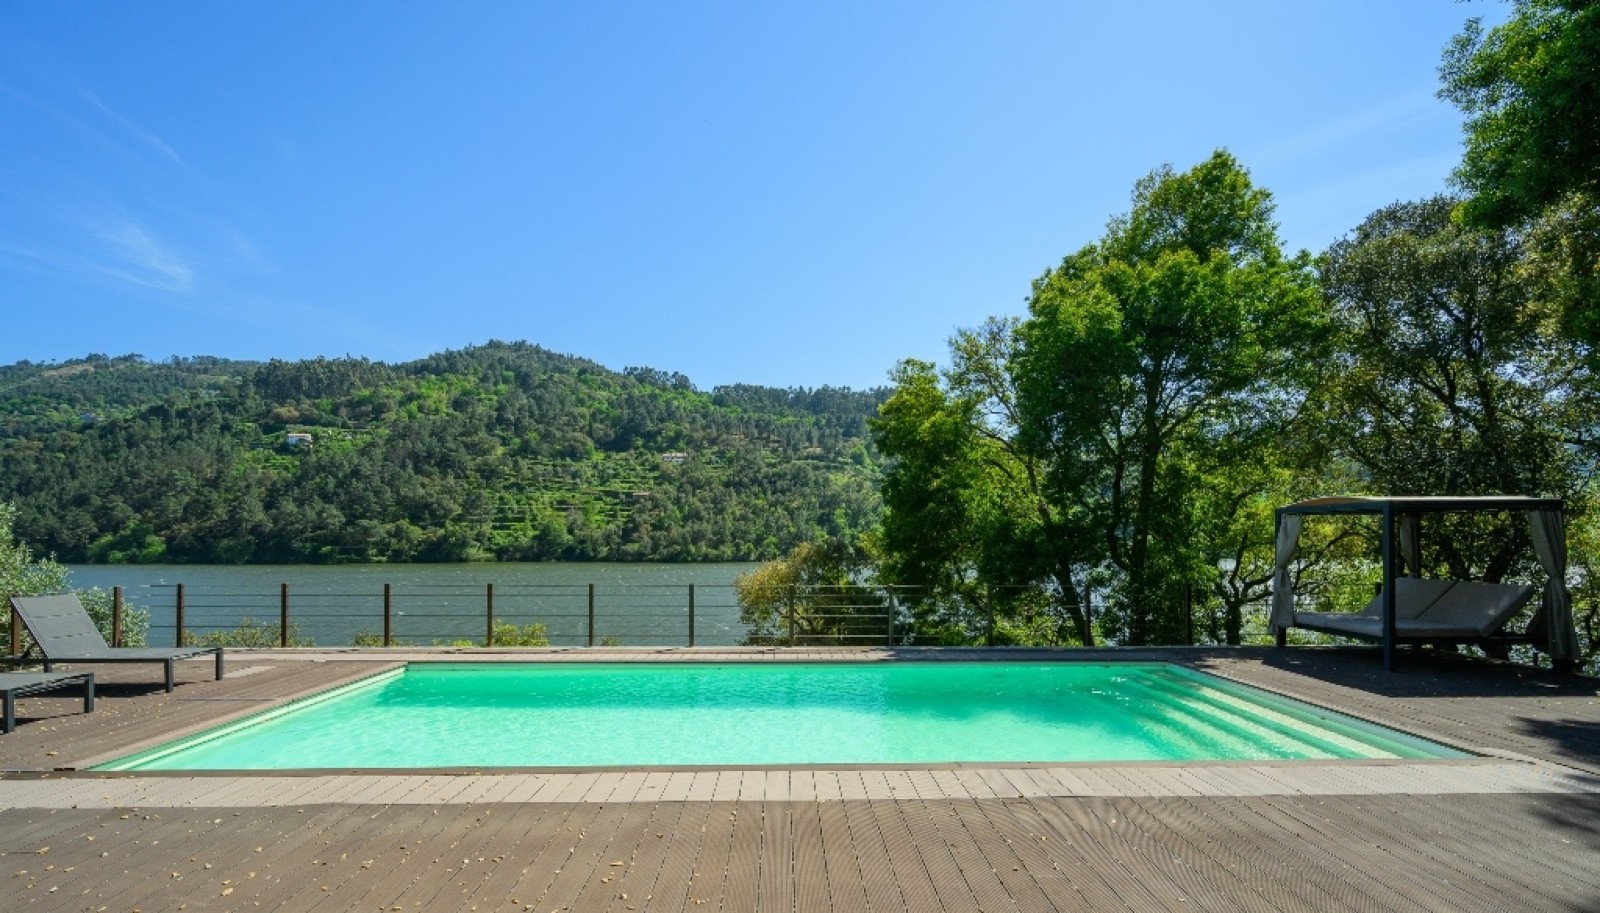 Moradia com piscina em frente ao Rio Douro, Baião_262580